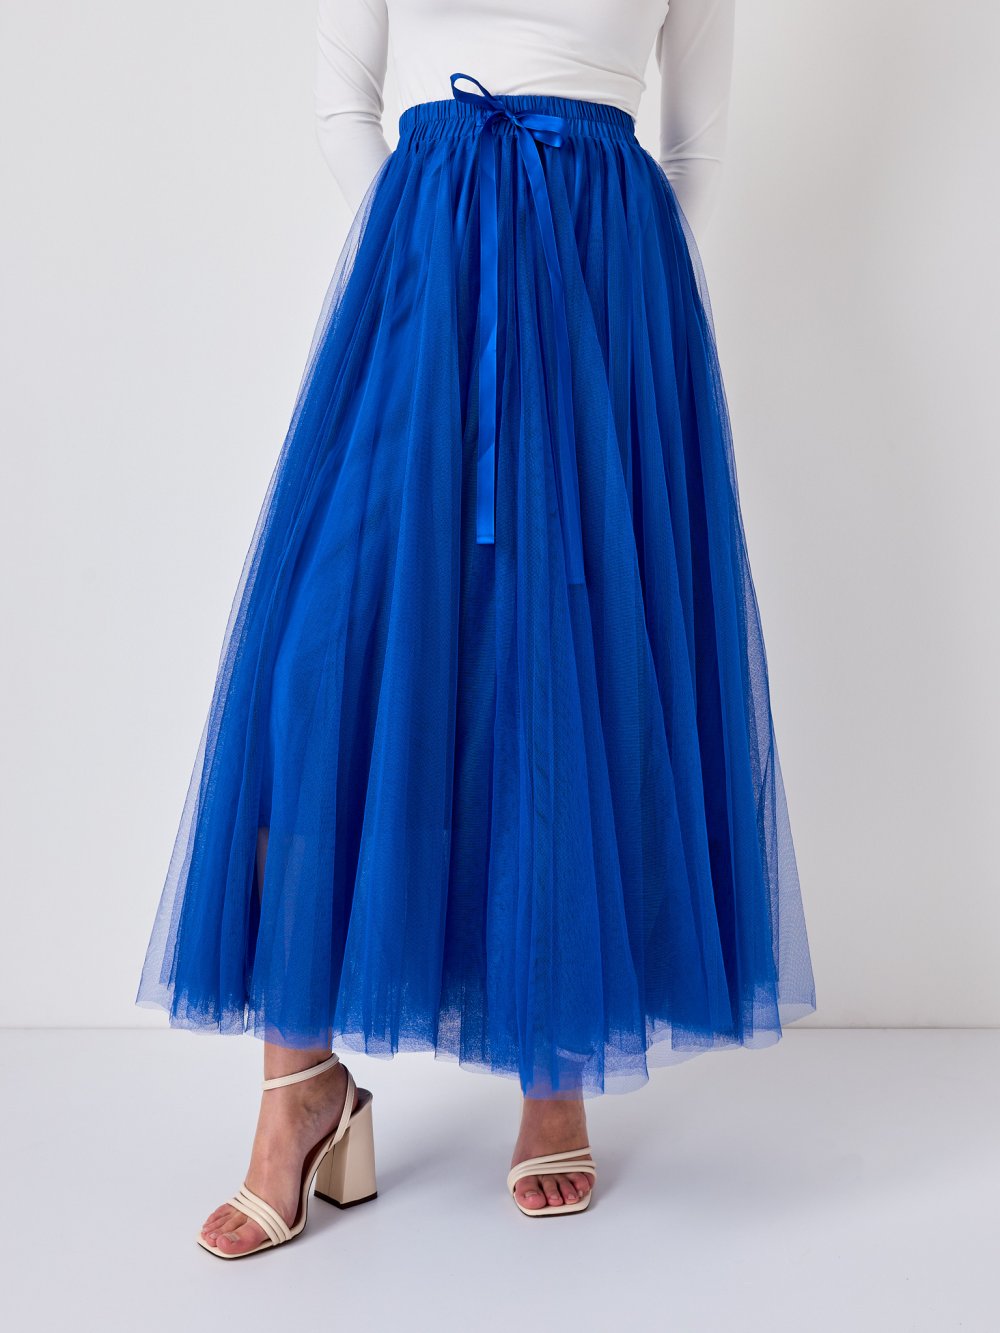 Modrá tylová sukně Lia